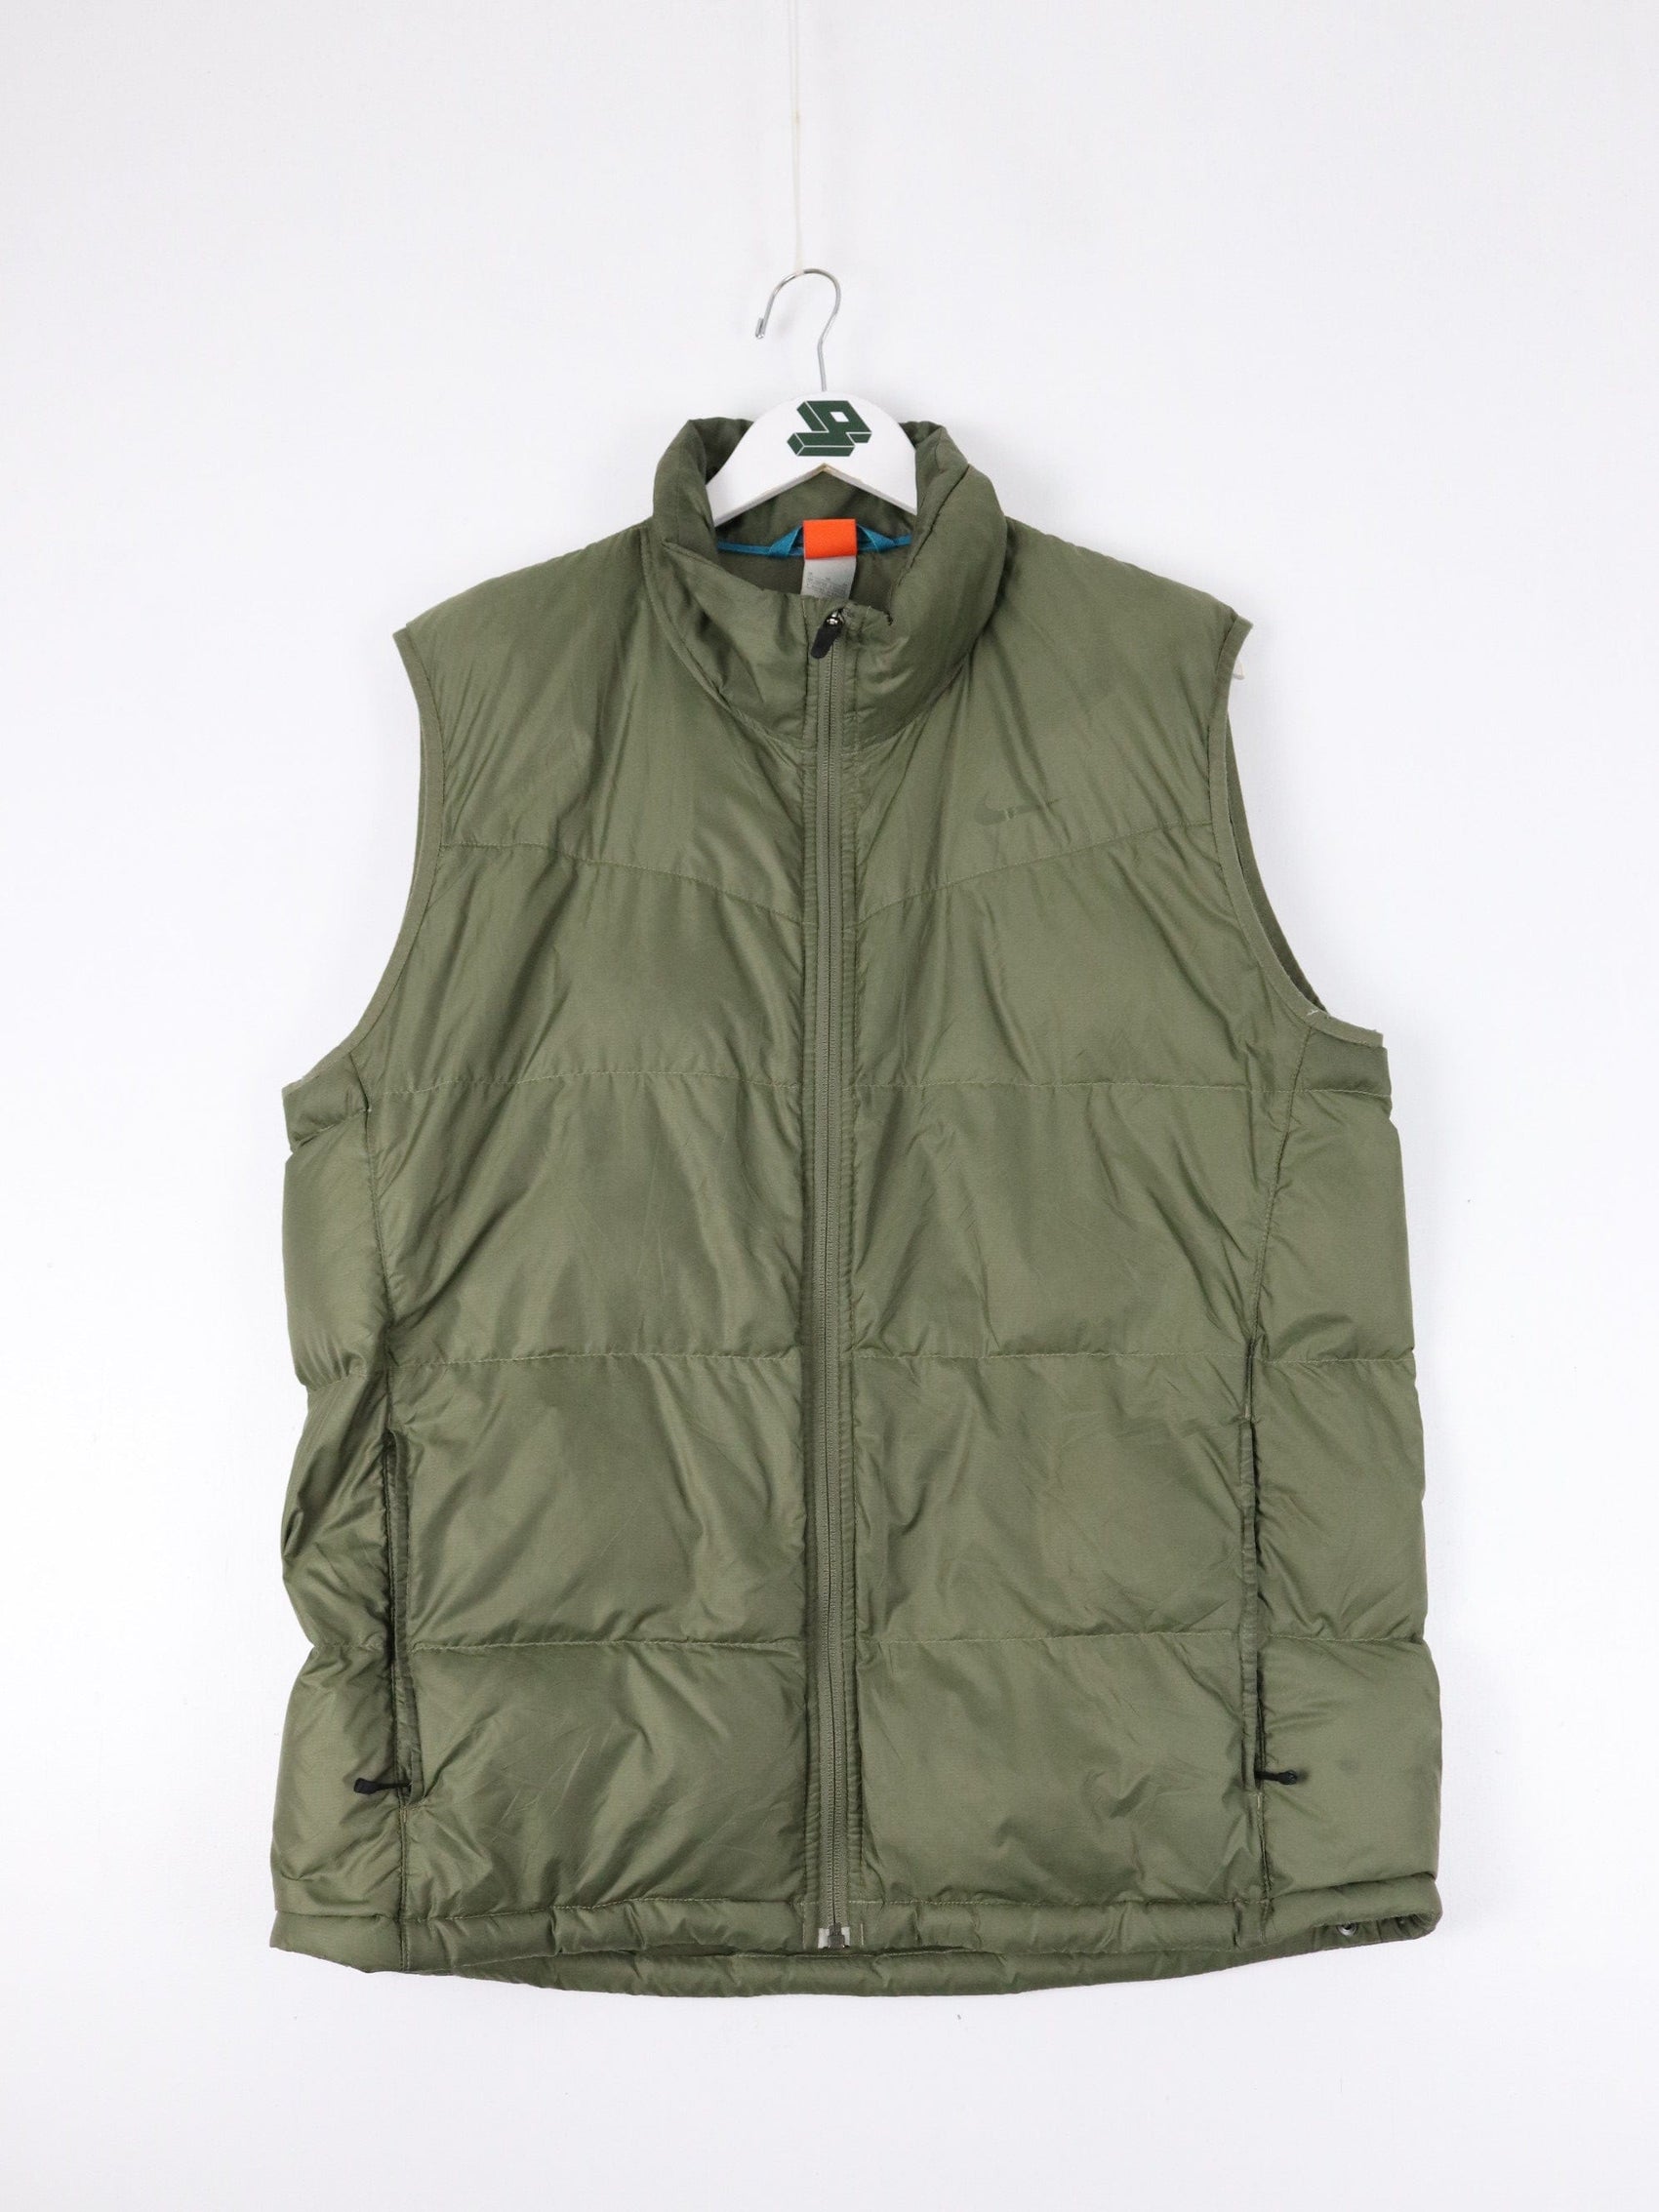 GKSII Vest Mens XL Brown Orange Fleece Reversible Jacket Outdoors – Proper  Vintage